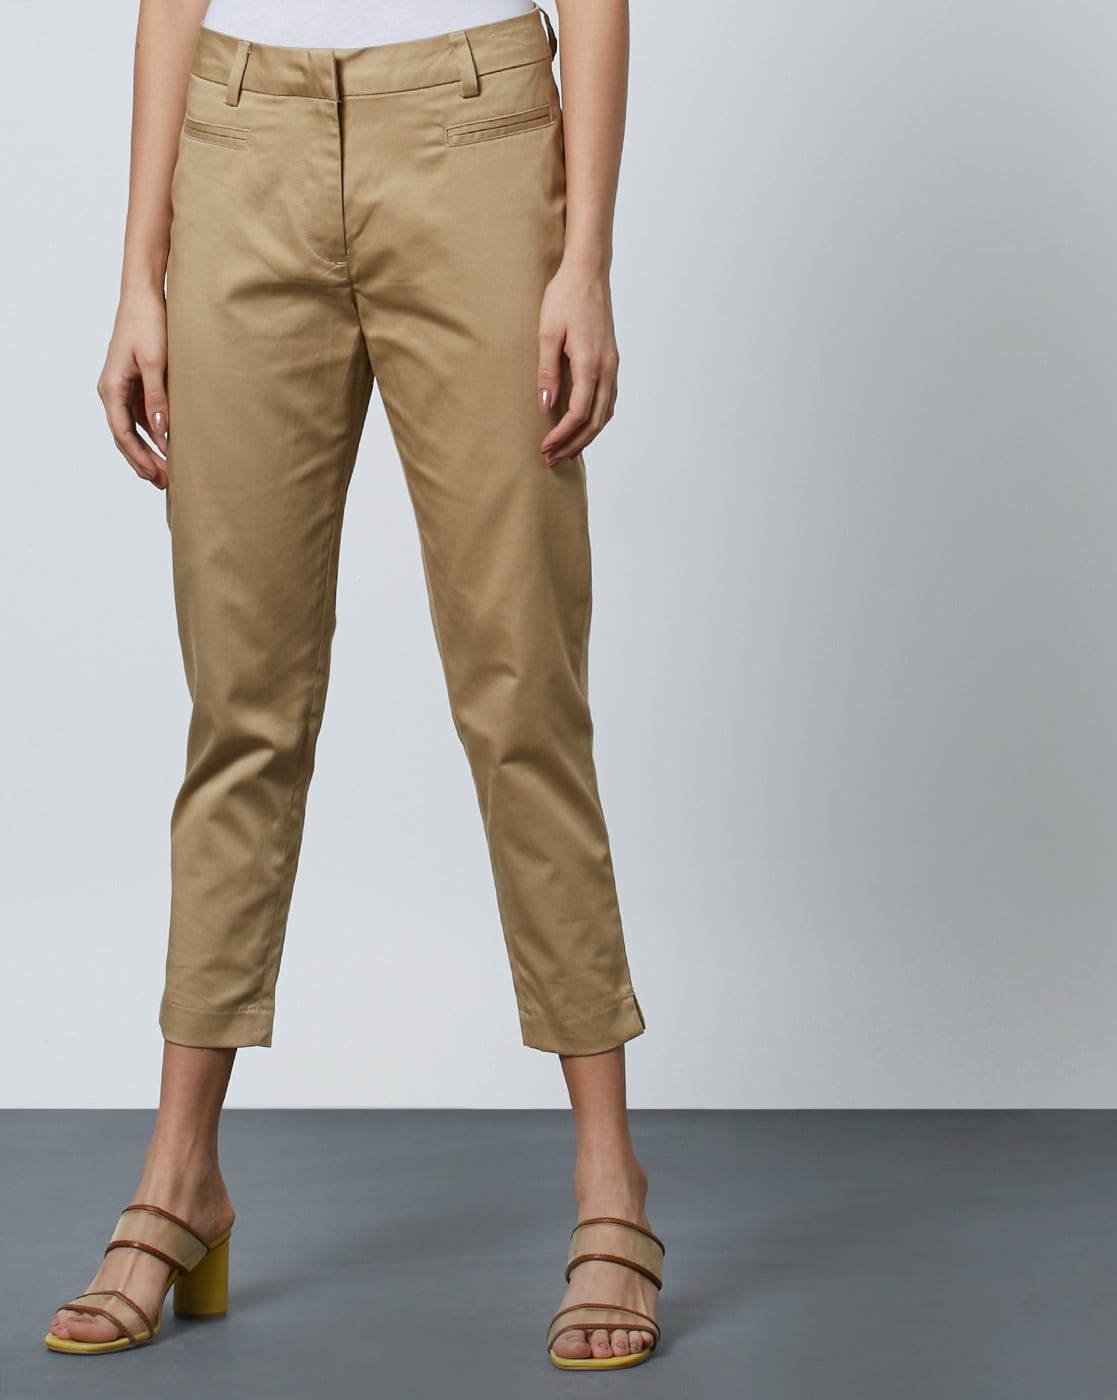 Buy Integriti Khaki Skinny Fit Cotton Jeans for Men Online  Tata CLiQ